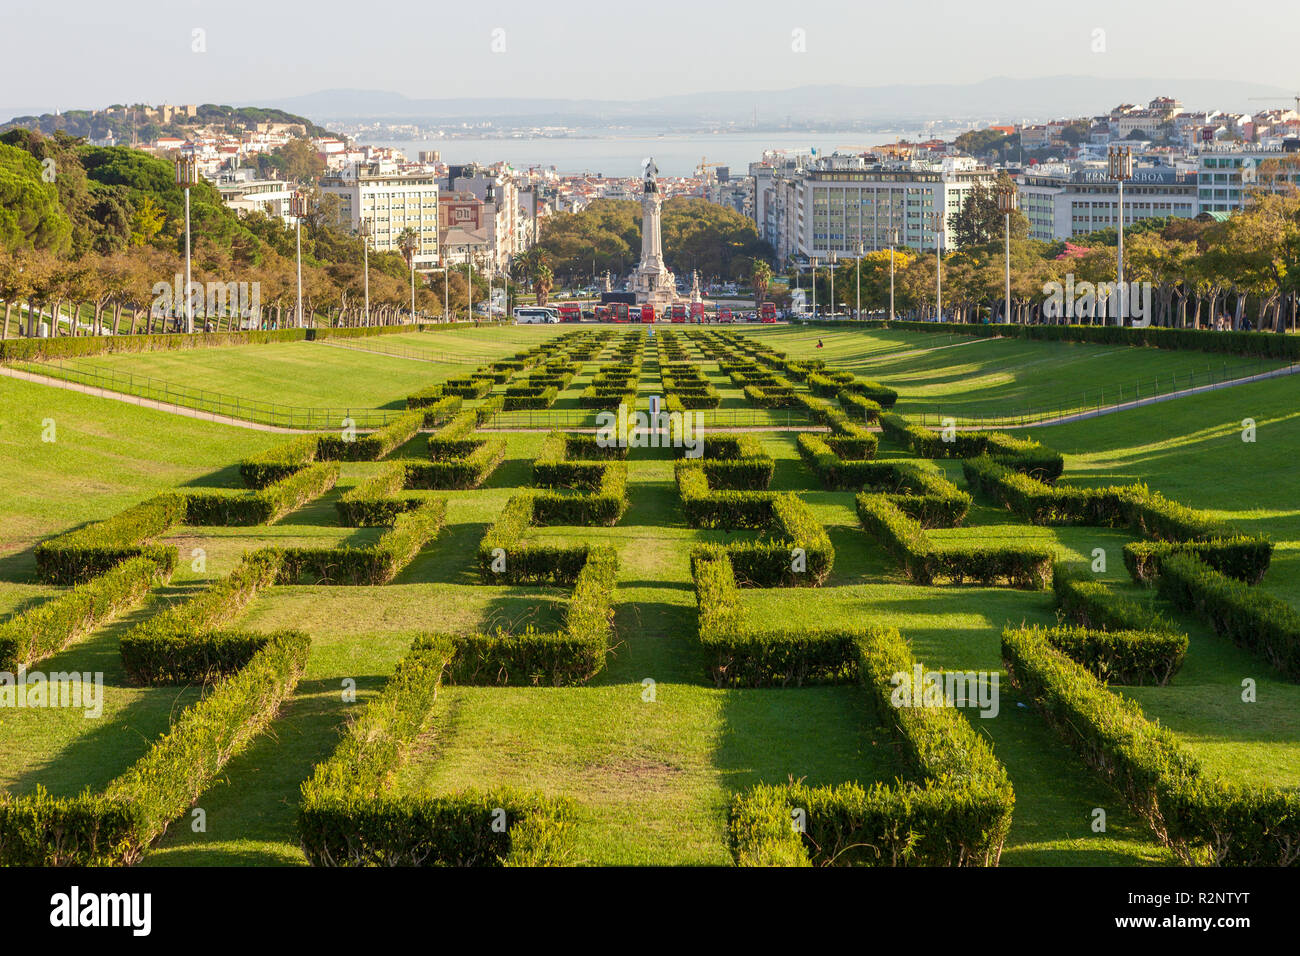 Parque Eduardo VII do Reino Unido. Lisbon, Portugal Stock Photo